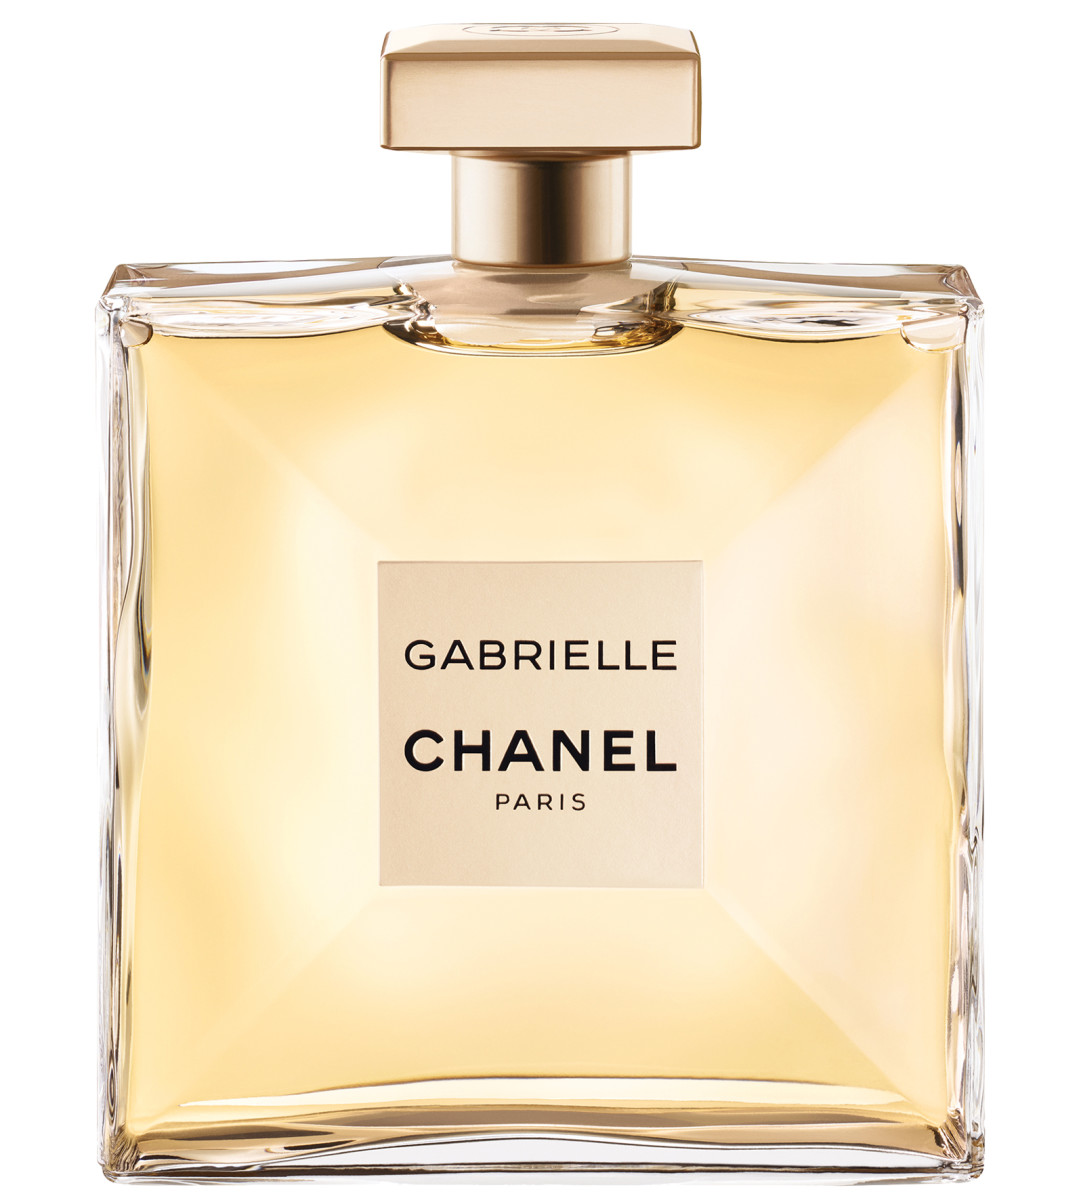 Chanel Gabrielle Chanel